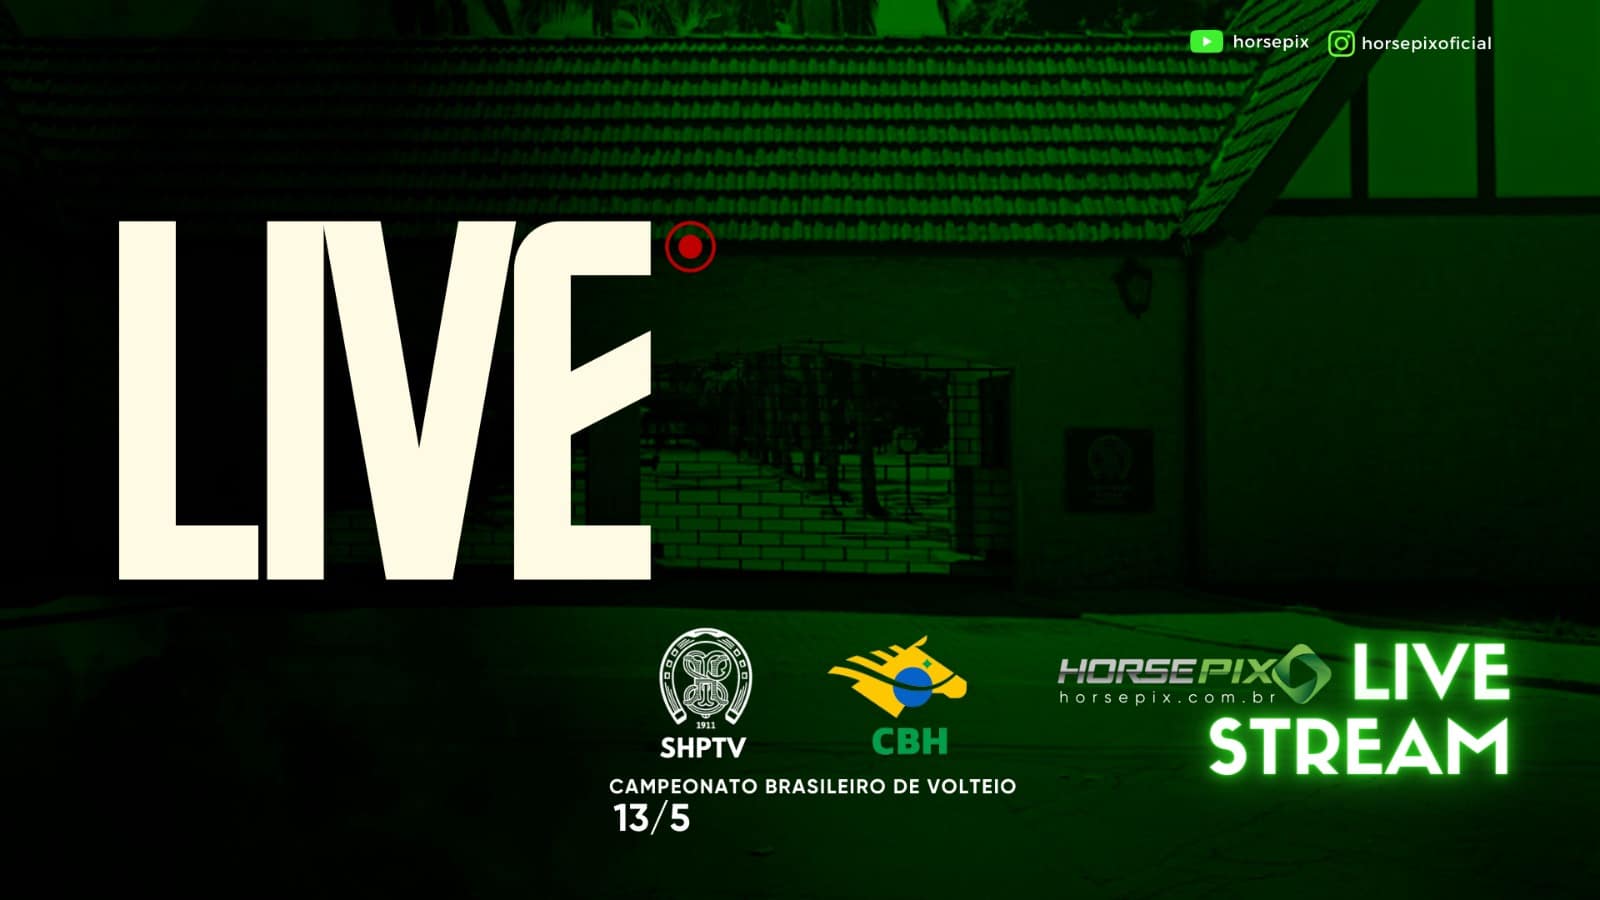 SHPTV AO VIVO: Campeonato Brasileiro de Volteio – Horsepix